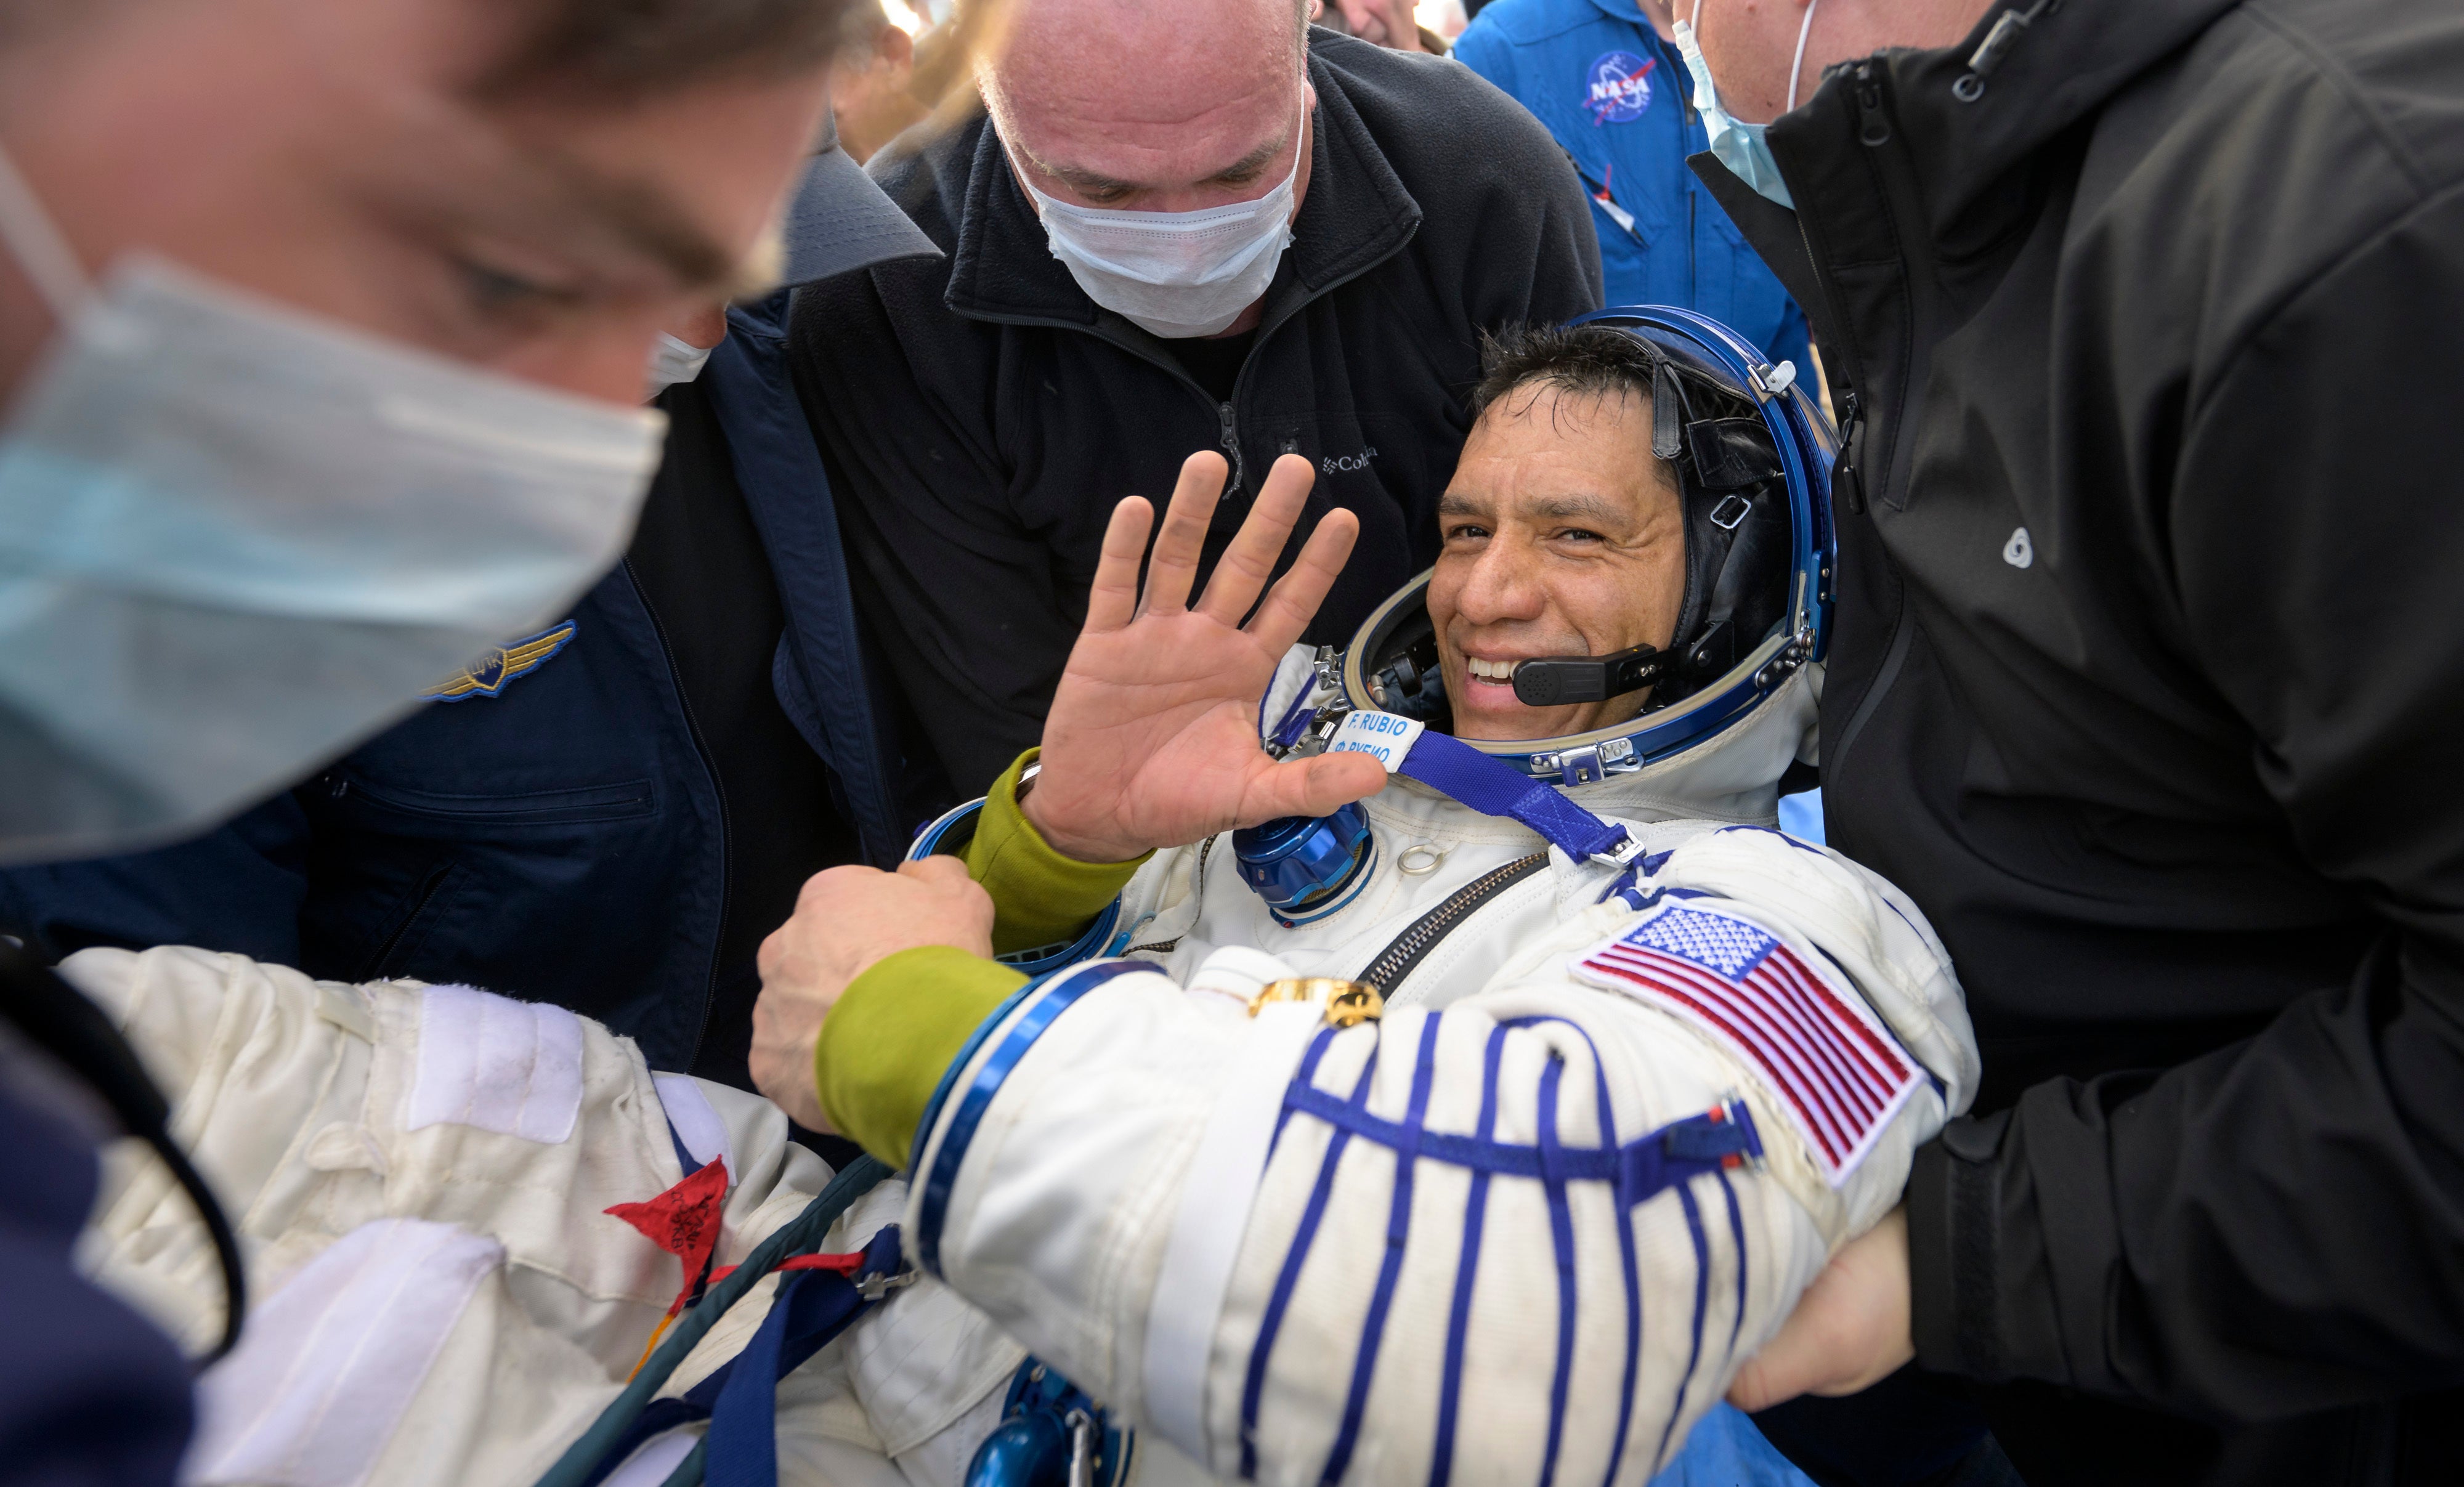 Ayudan a Frank Rubio a salir de la astronave Soyuz MS-23 minutos después de que él y los cosmonautas rusos Sergey Prokopyev y Dmitri Petelin aterrizaran en una zona remota cerca de la ciudad de Jezkazgan, Kazajistán